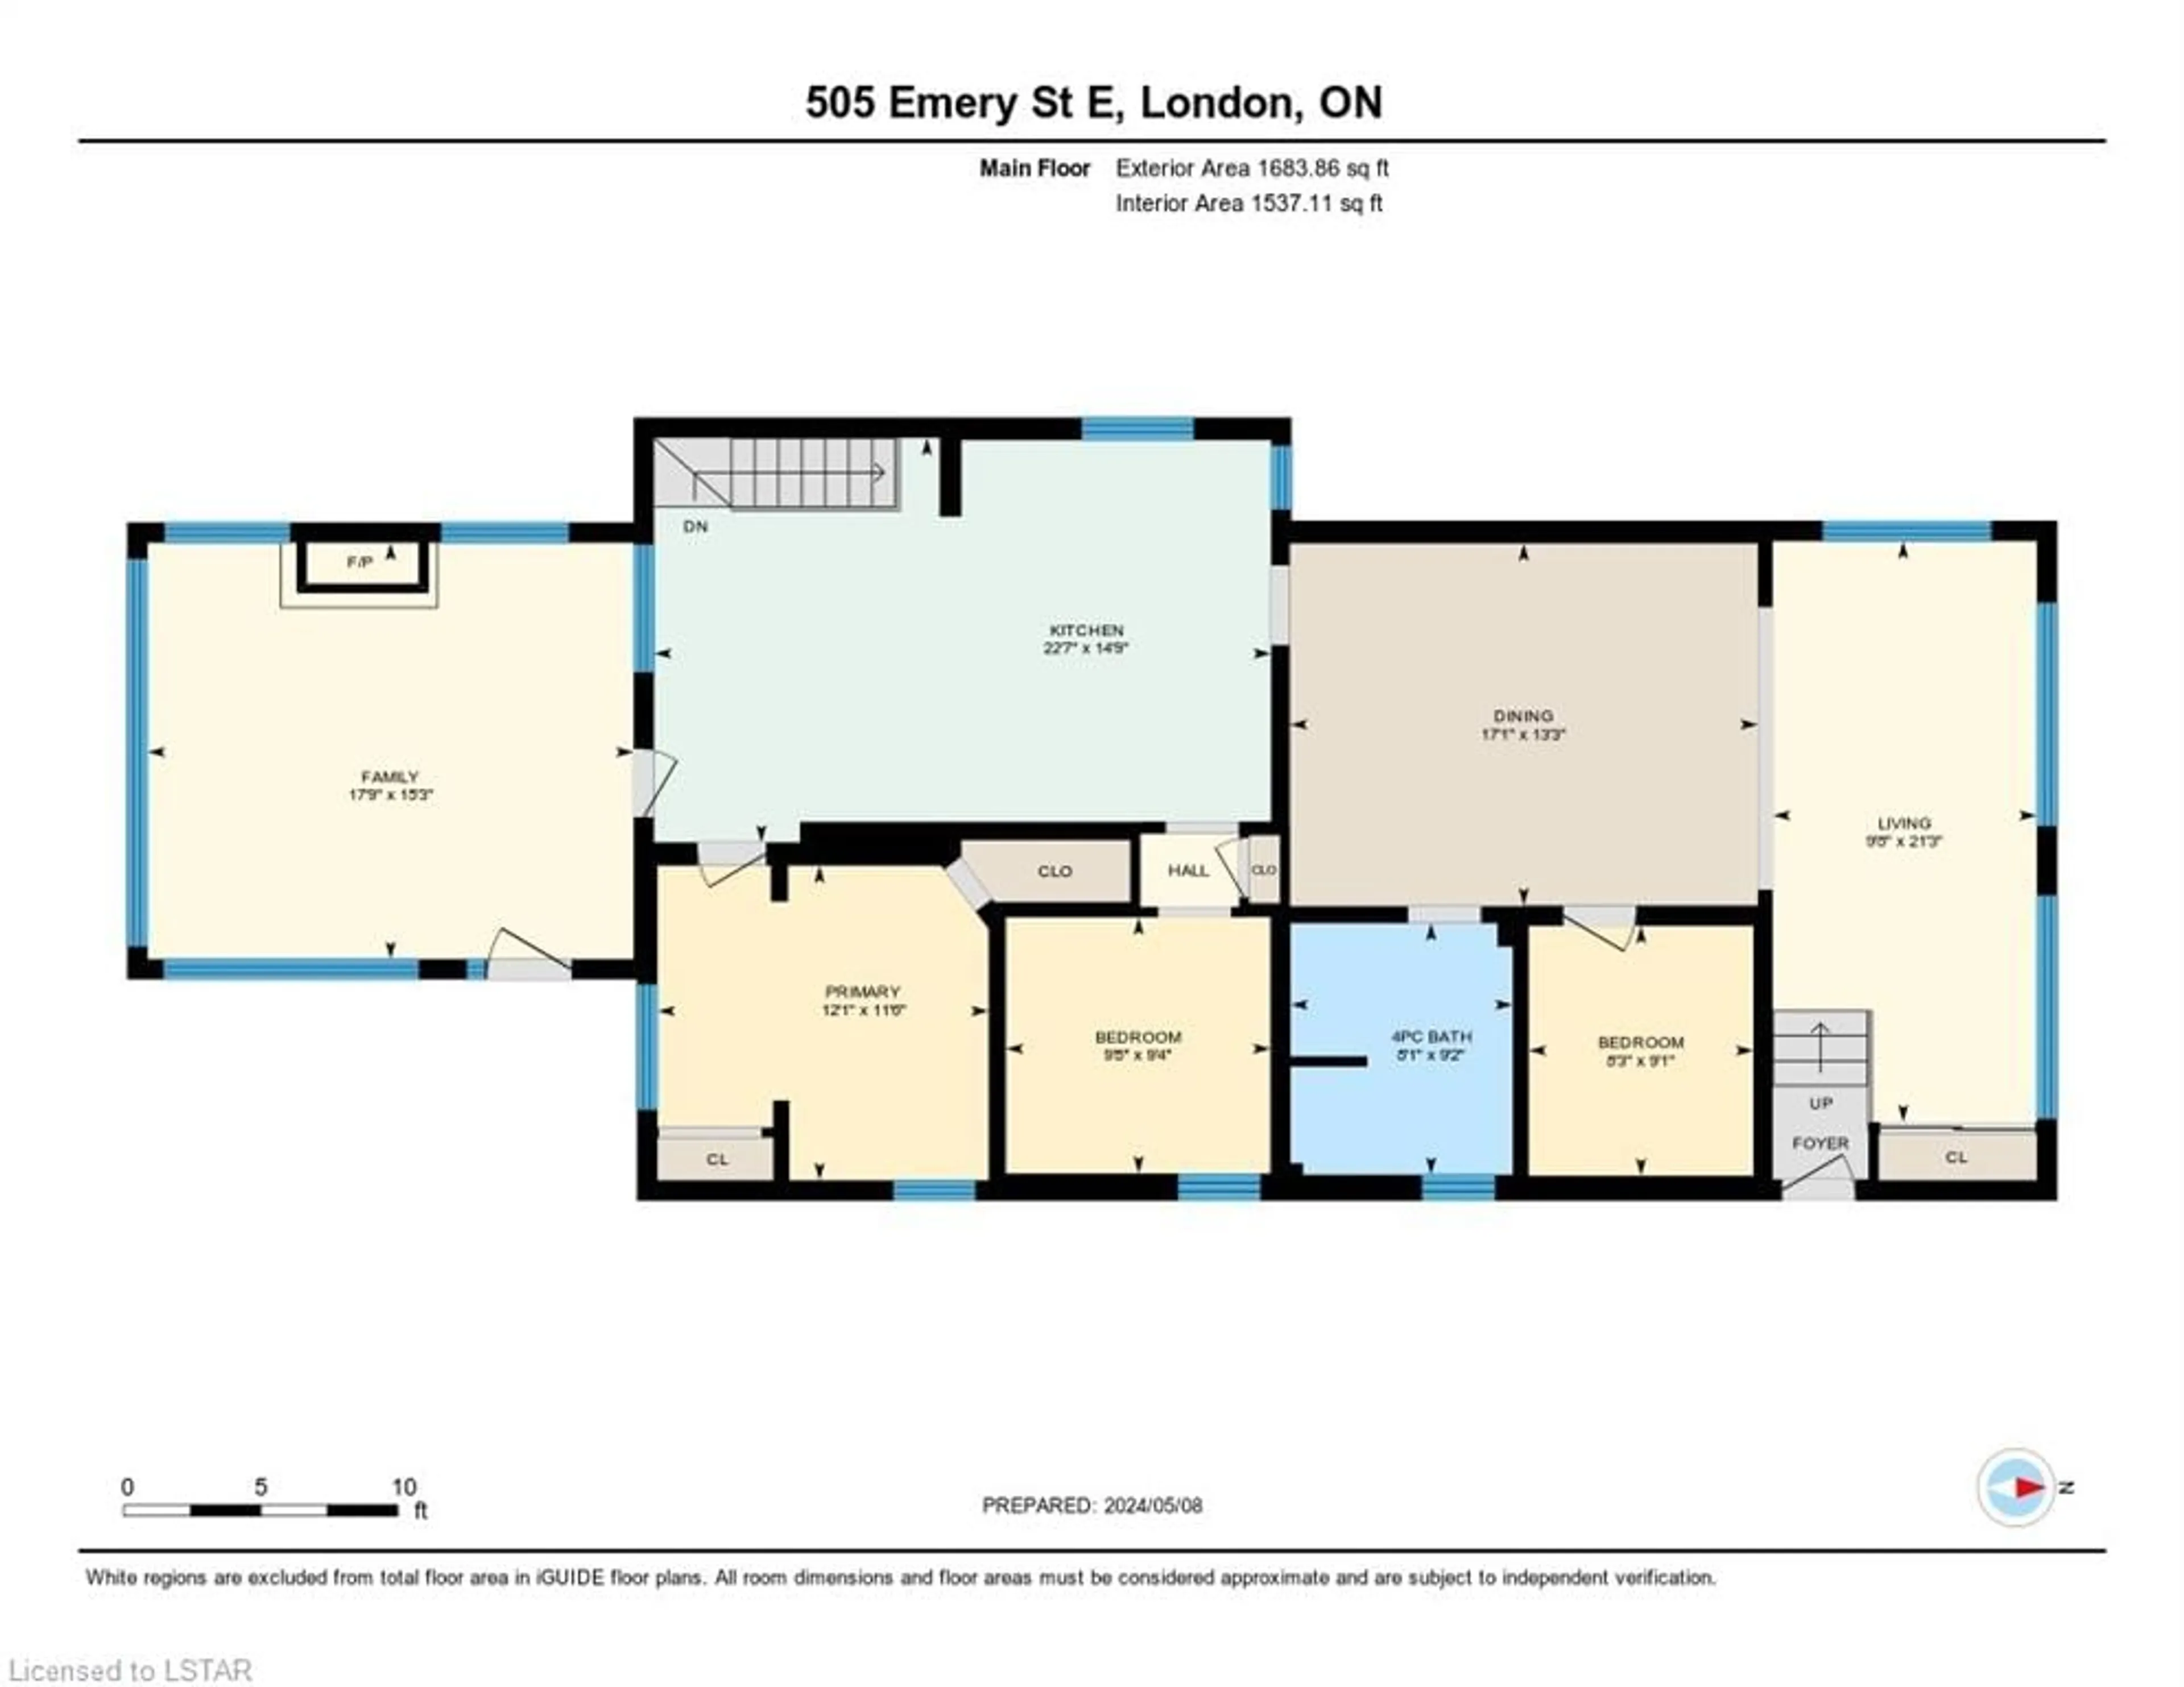 Floor plan for 505 Emery St, London Ontario N6C 2E9